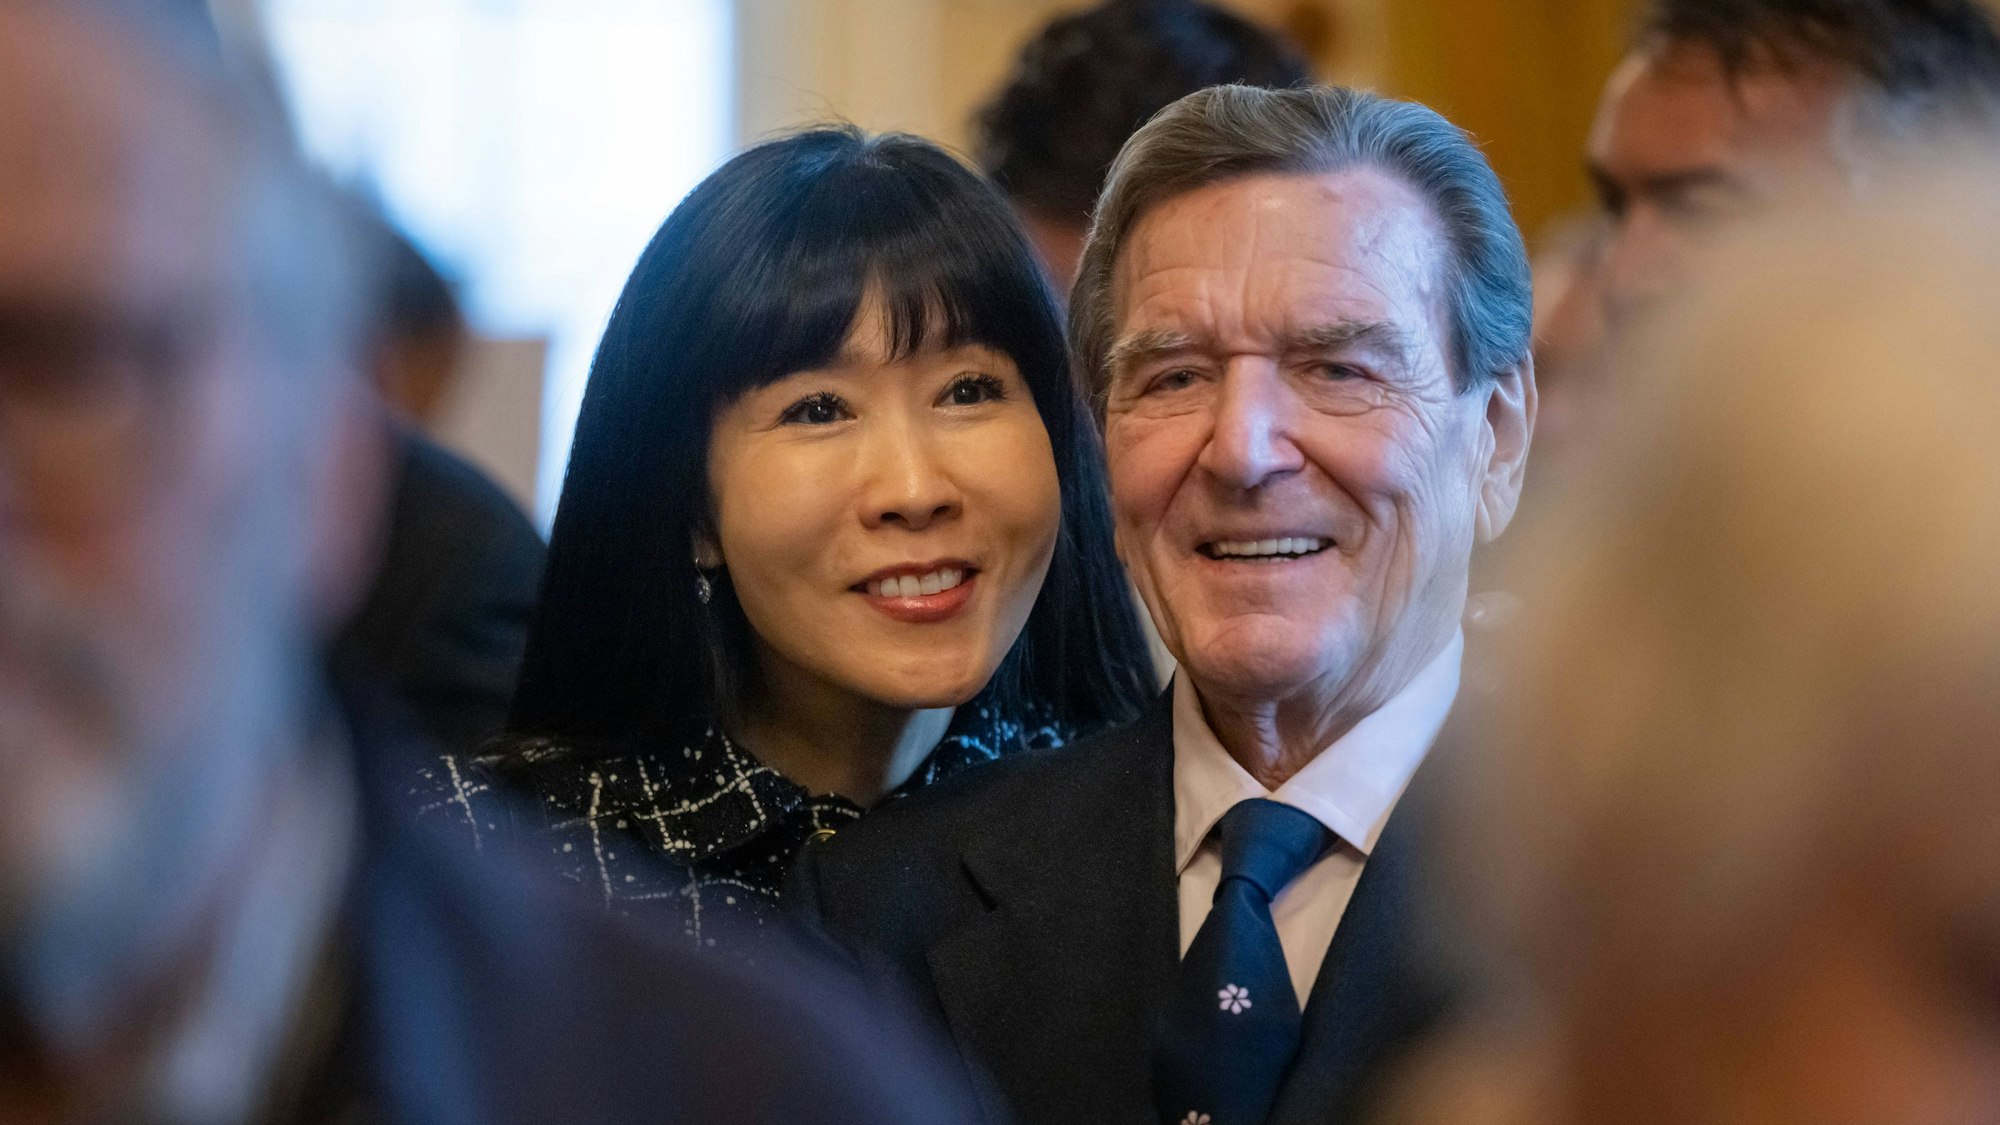 Gerhard Schröder mit seiner Ehefrau So-yeon Schröder-Kim. Der Altkanzler besuchte am 9. Mai mit seiner Frau einen Empfang der russischen Botschaft – und steht nun in der Kritik. (Archivbild)